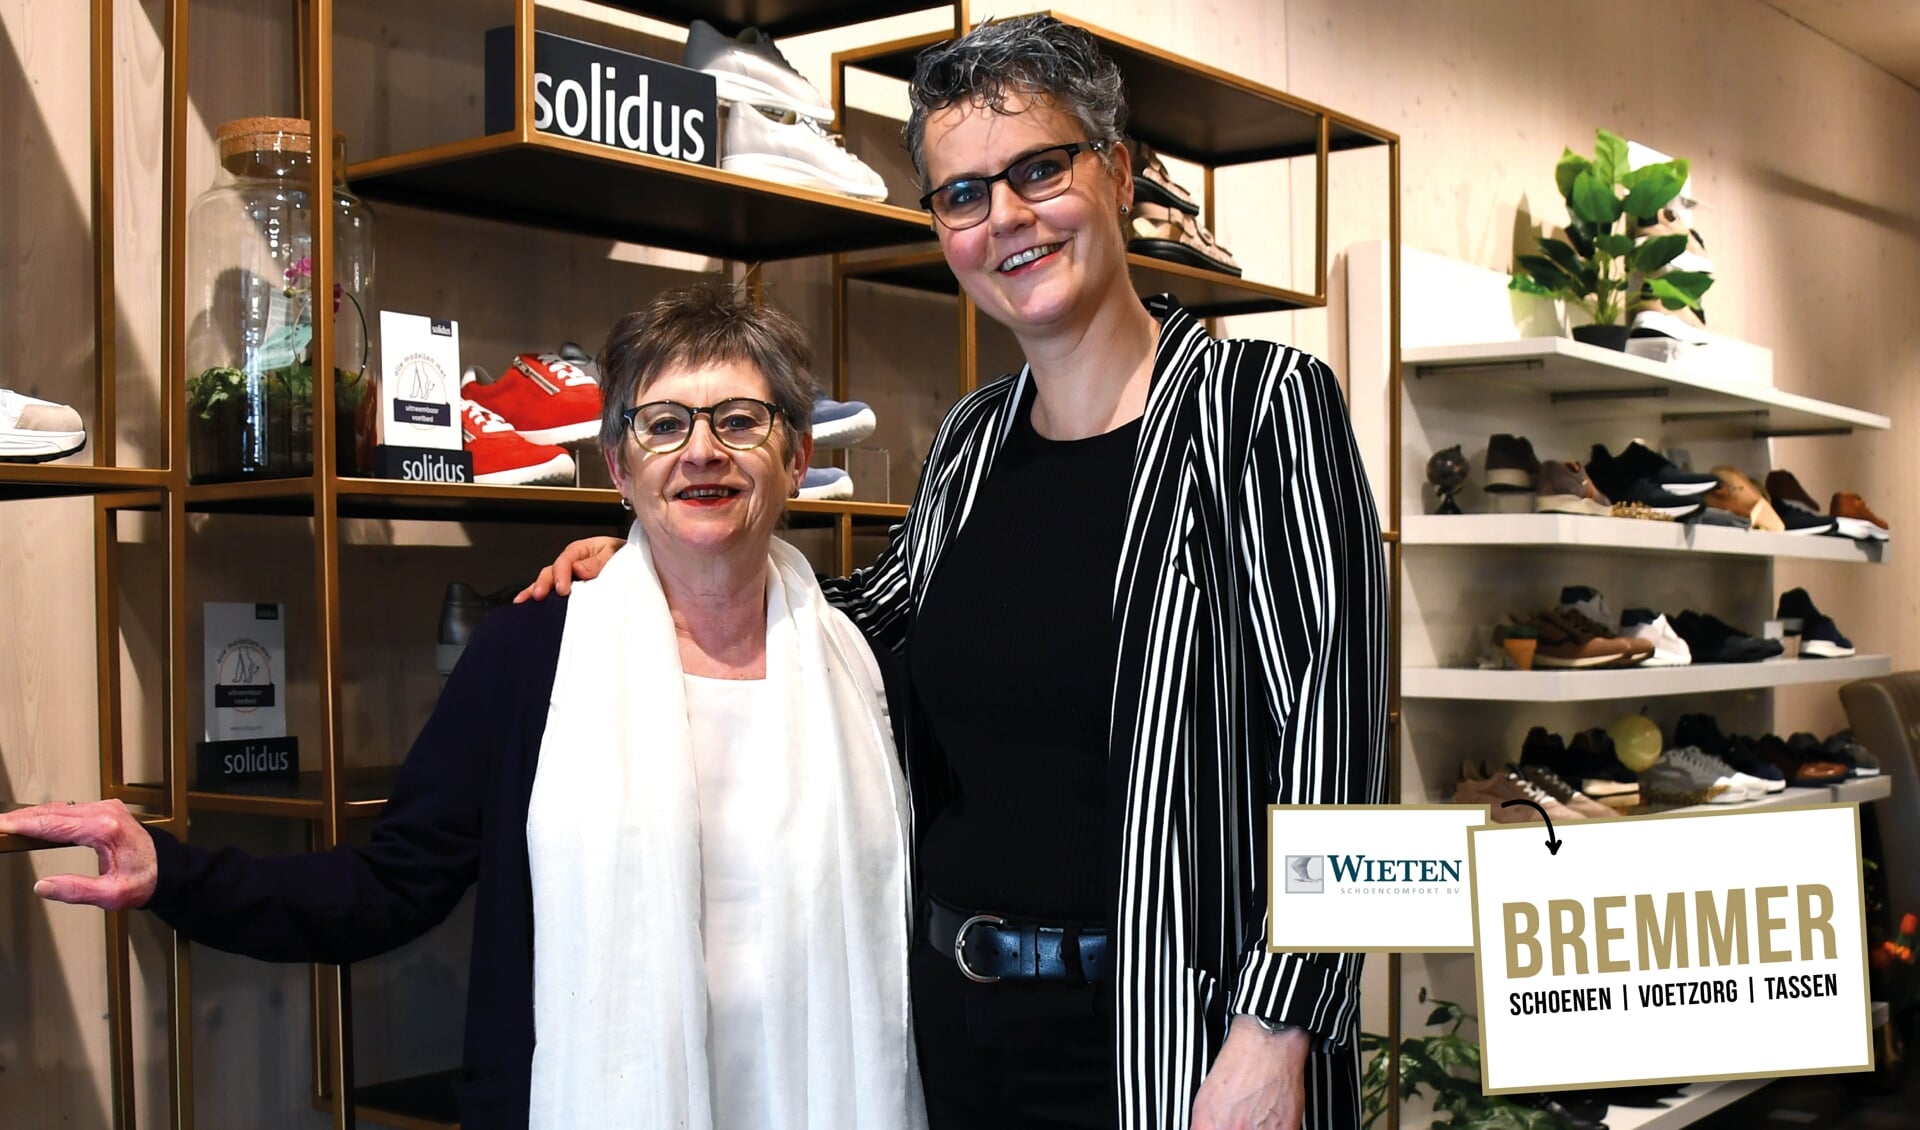 Familie Bremmer opent schoenenwinkel in voormalige winkel van Wieten - Swollenaer | Nieuws uit Zwolle en